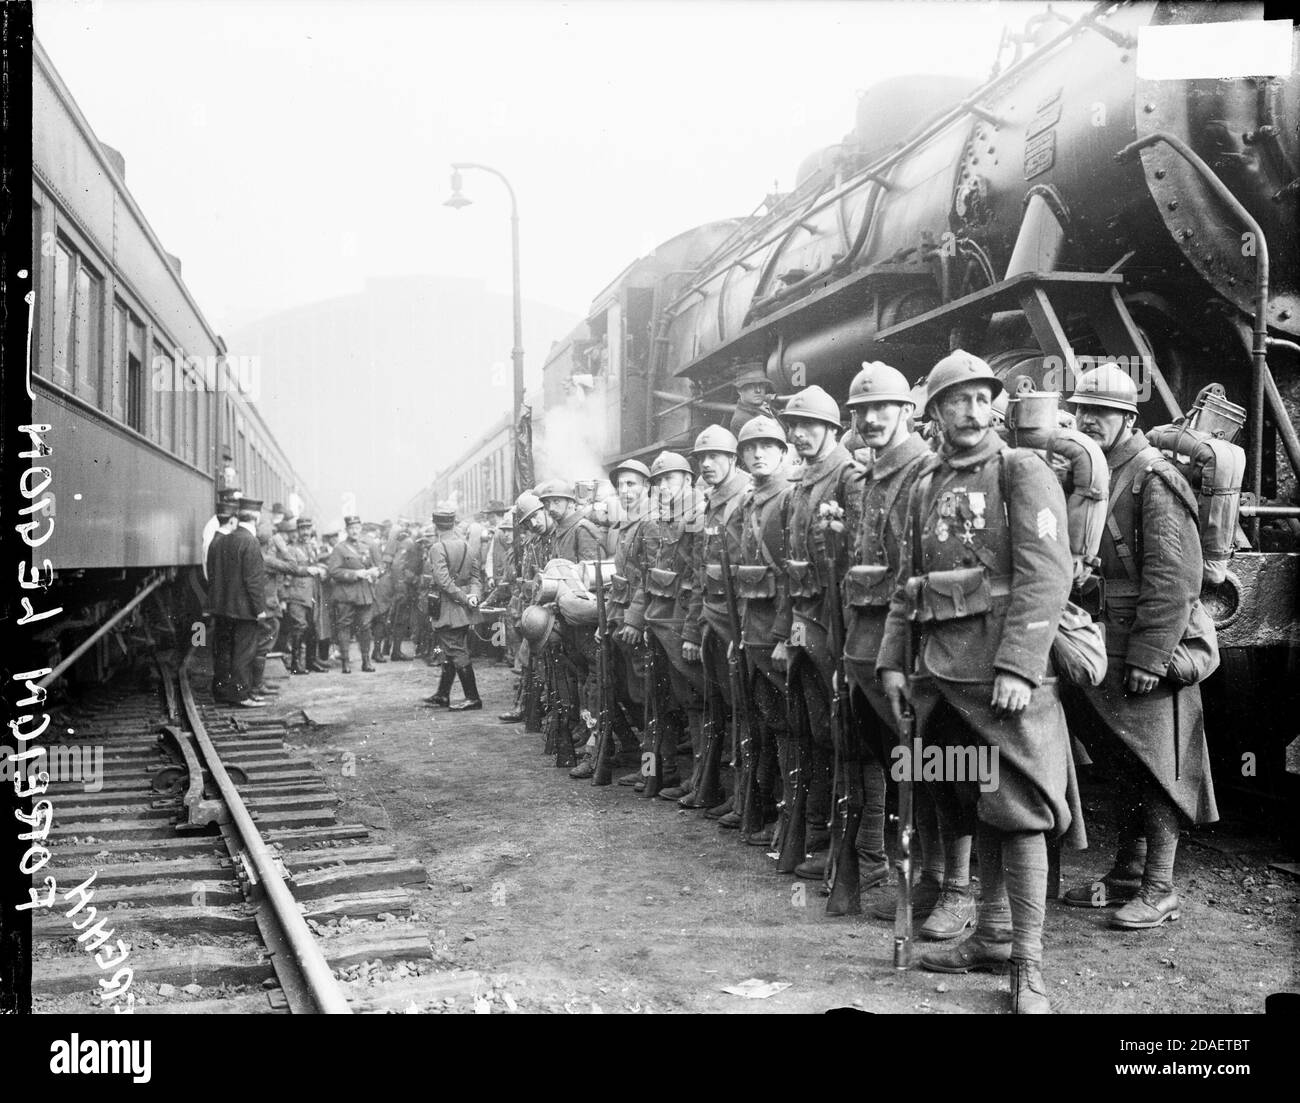 Französische Fremdenlegion, mit Gewehren und Rucksäcken, steht in Reihen neben einem Zug bei ihrer Ankunft in Chicago, Illinois, 1918. Stockfoto